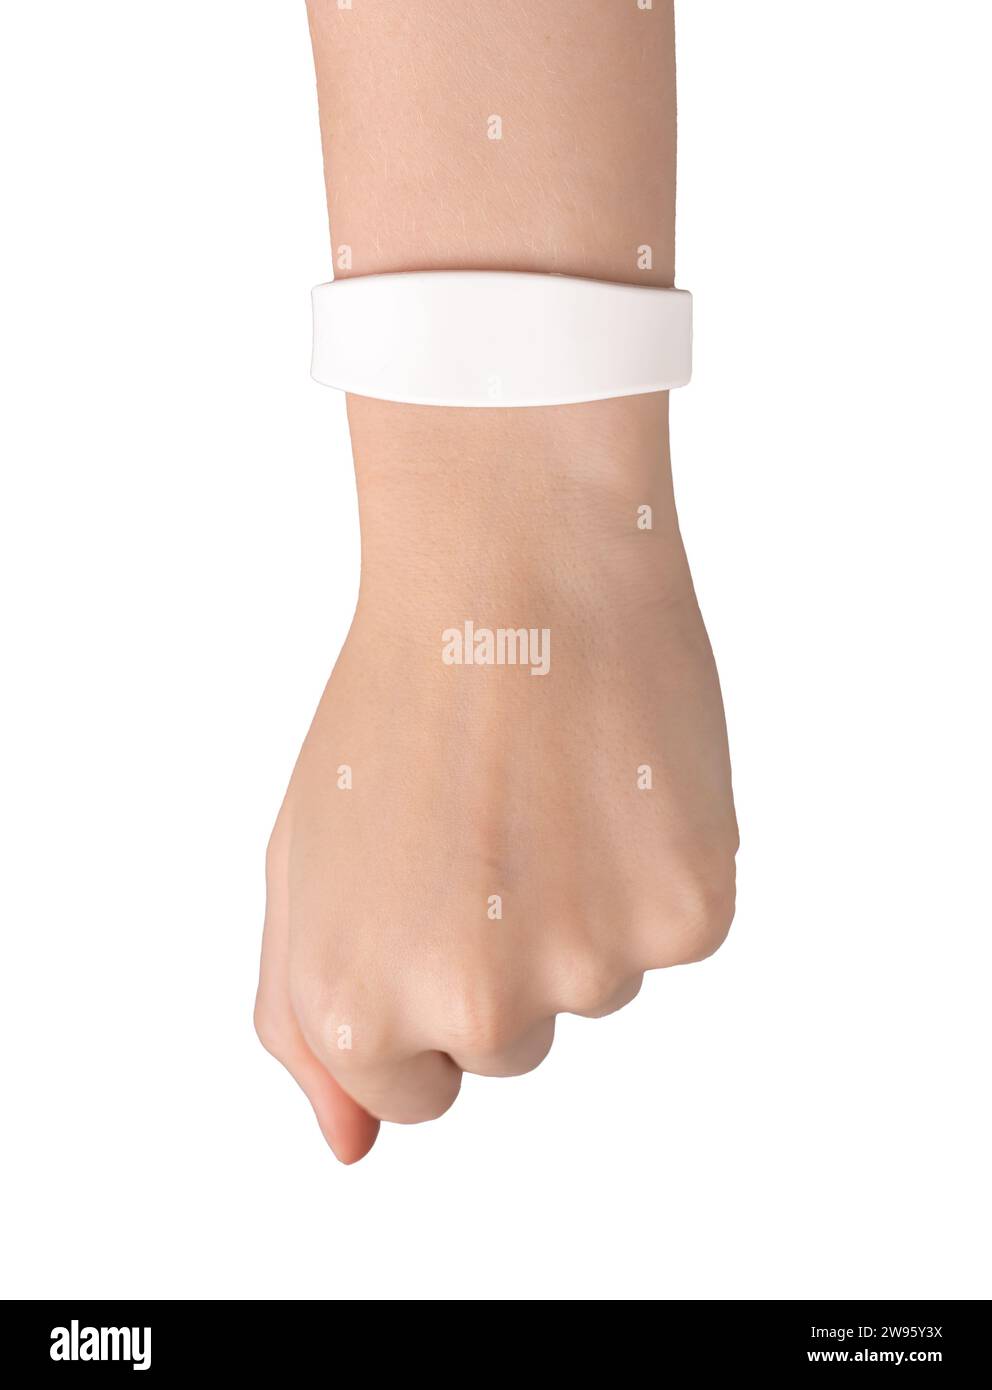 Modello di braccialetto in silicone su polso isolato su sfondo bianco Foto Stock